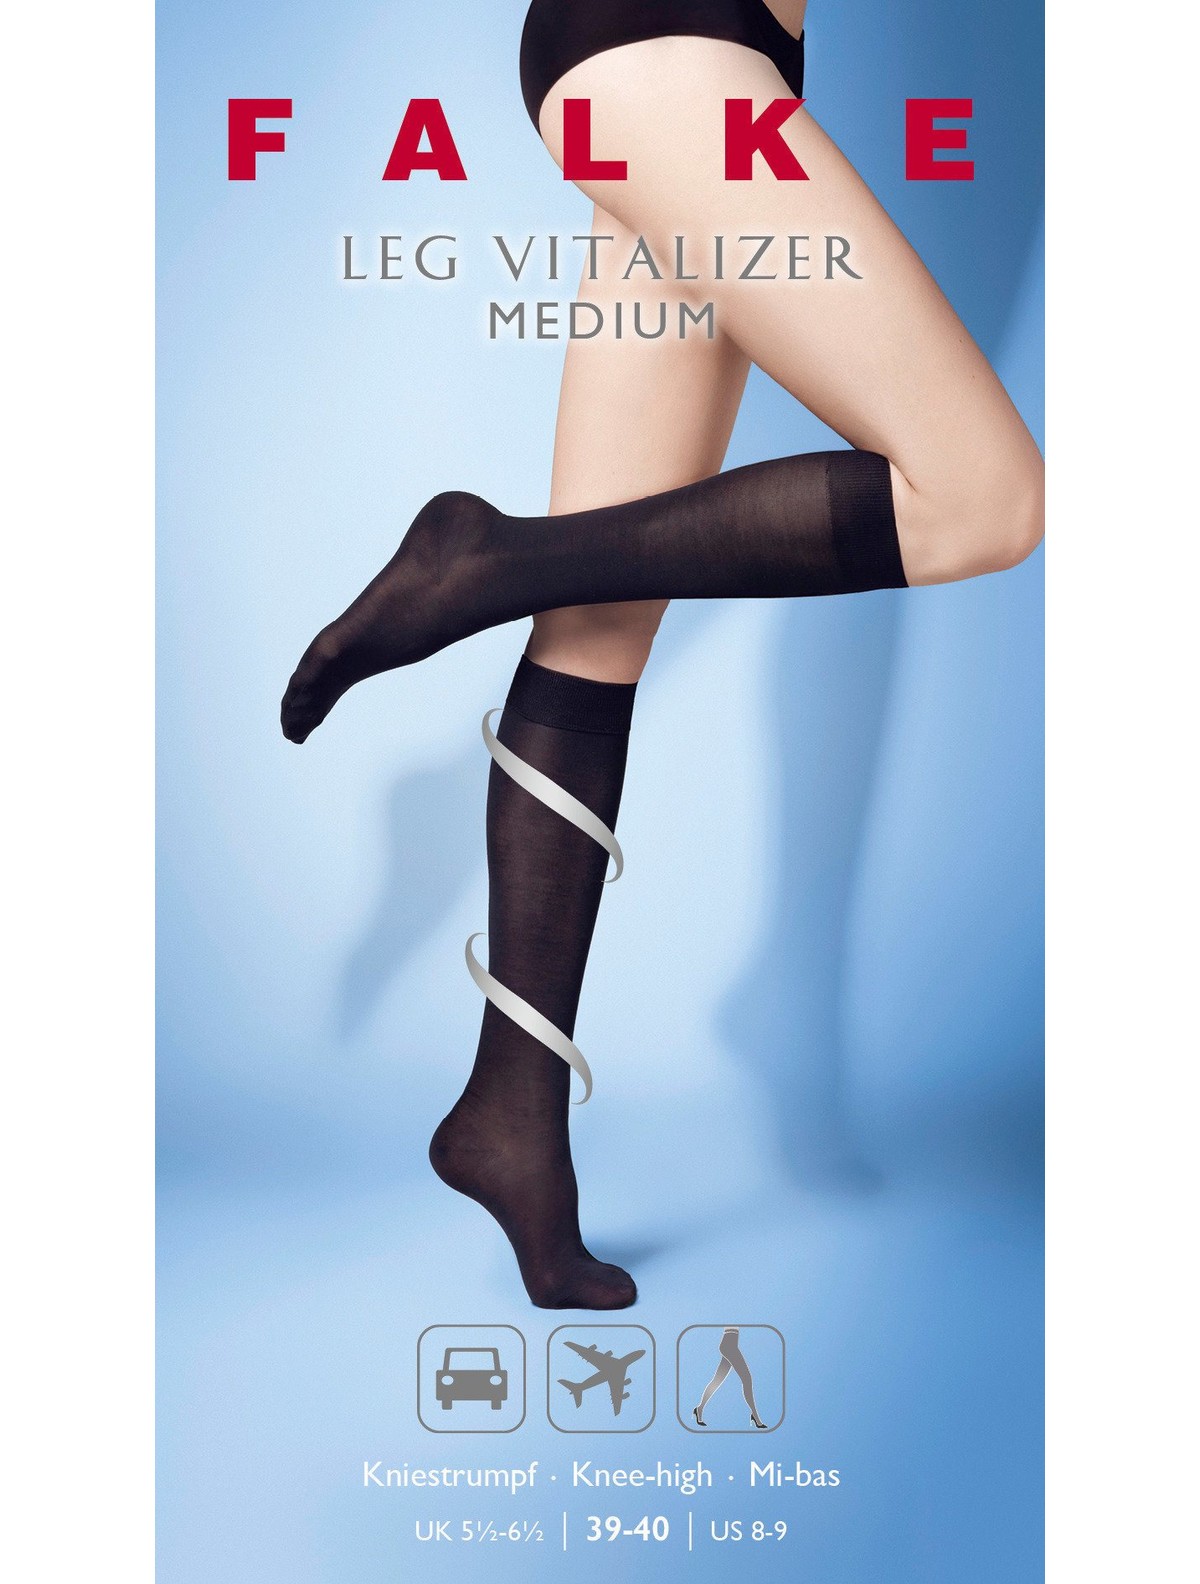 Falke Leg Vitalizer Medium Knee High Socks Support 2